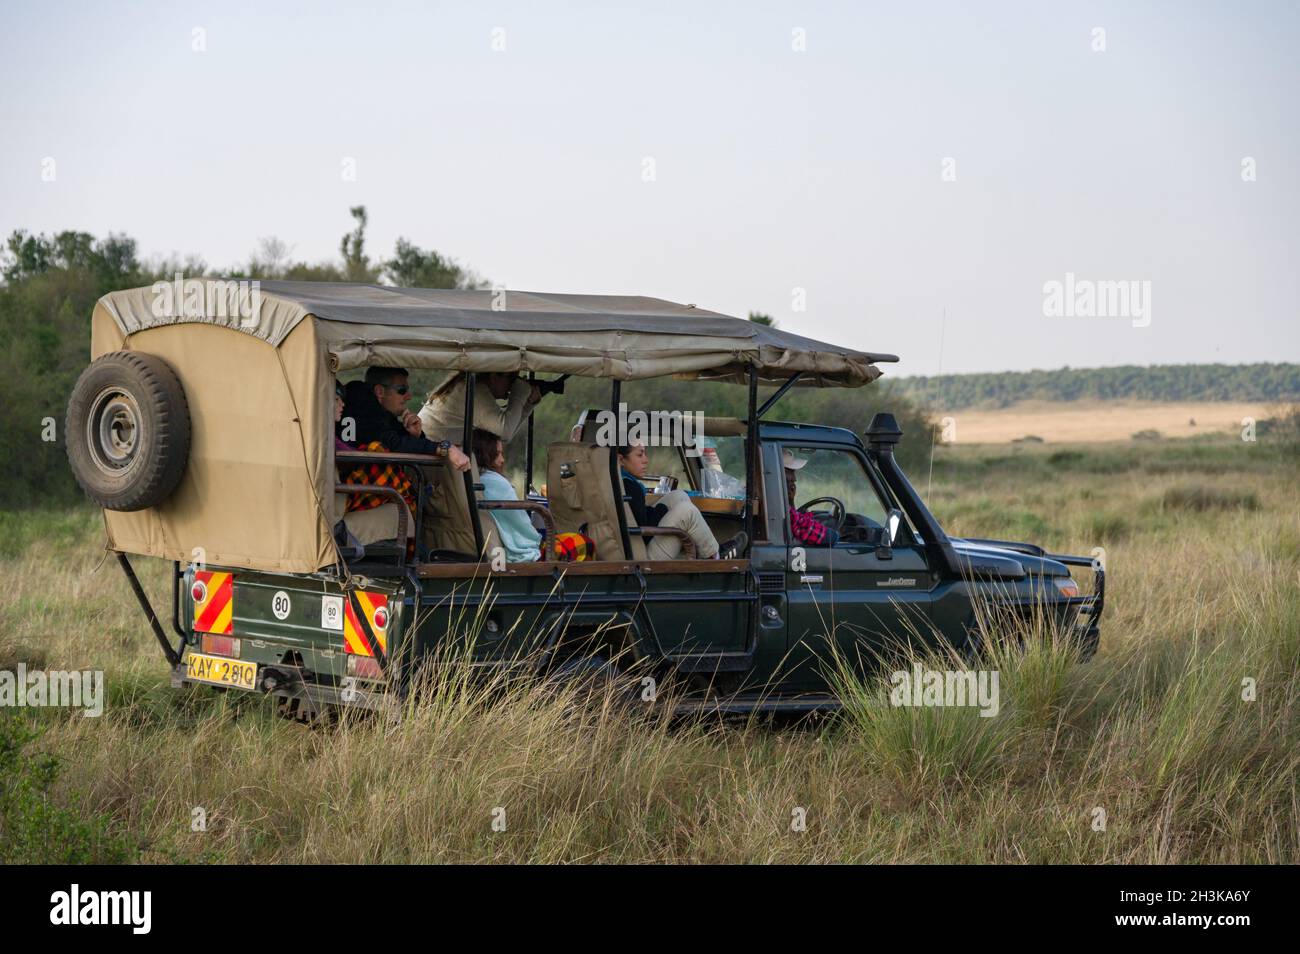 Les touristes attendaient dans un 4x4 Toyota Landcruiser, Masai Mara, Kenya Banque D'Images